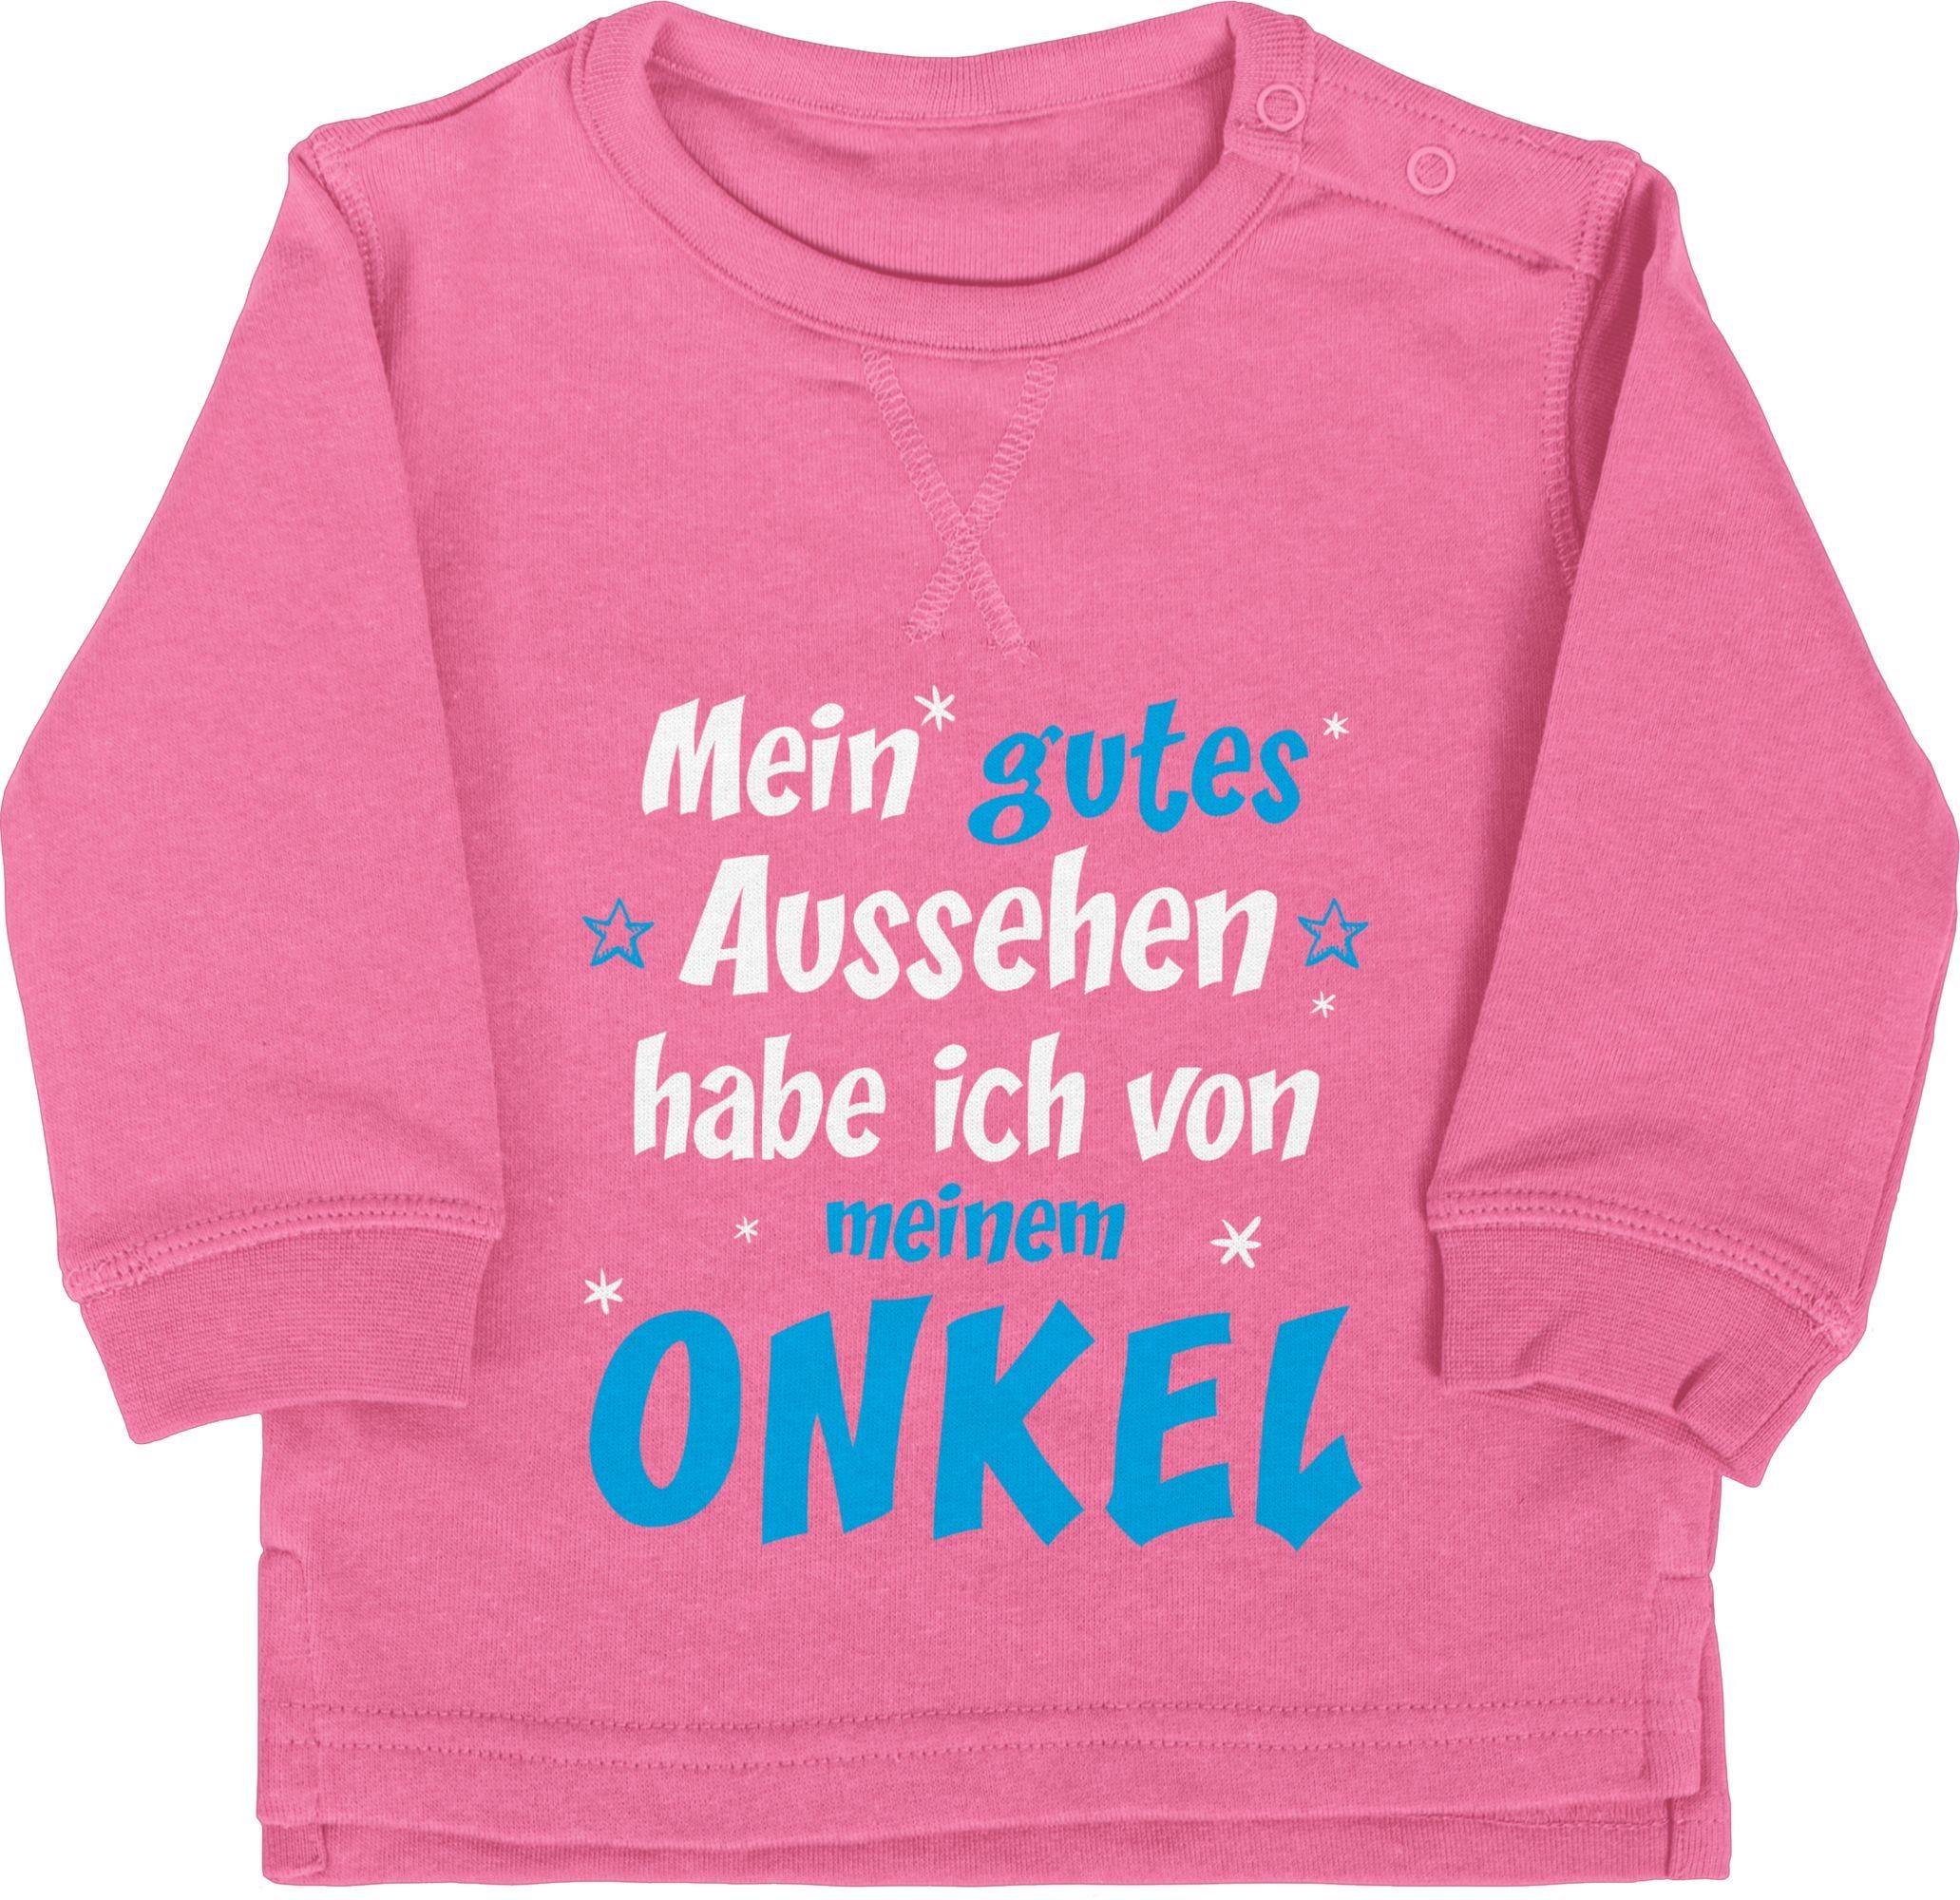 Shirtracer Sweatshirt Onkel Spruch - Mein gutes Aussehen habe ich von meinem ONKEL Sprüche Baby 2 Pink